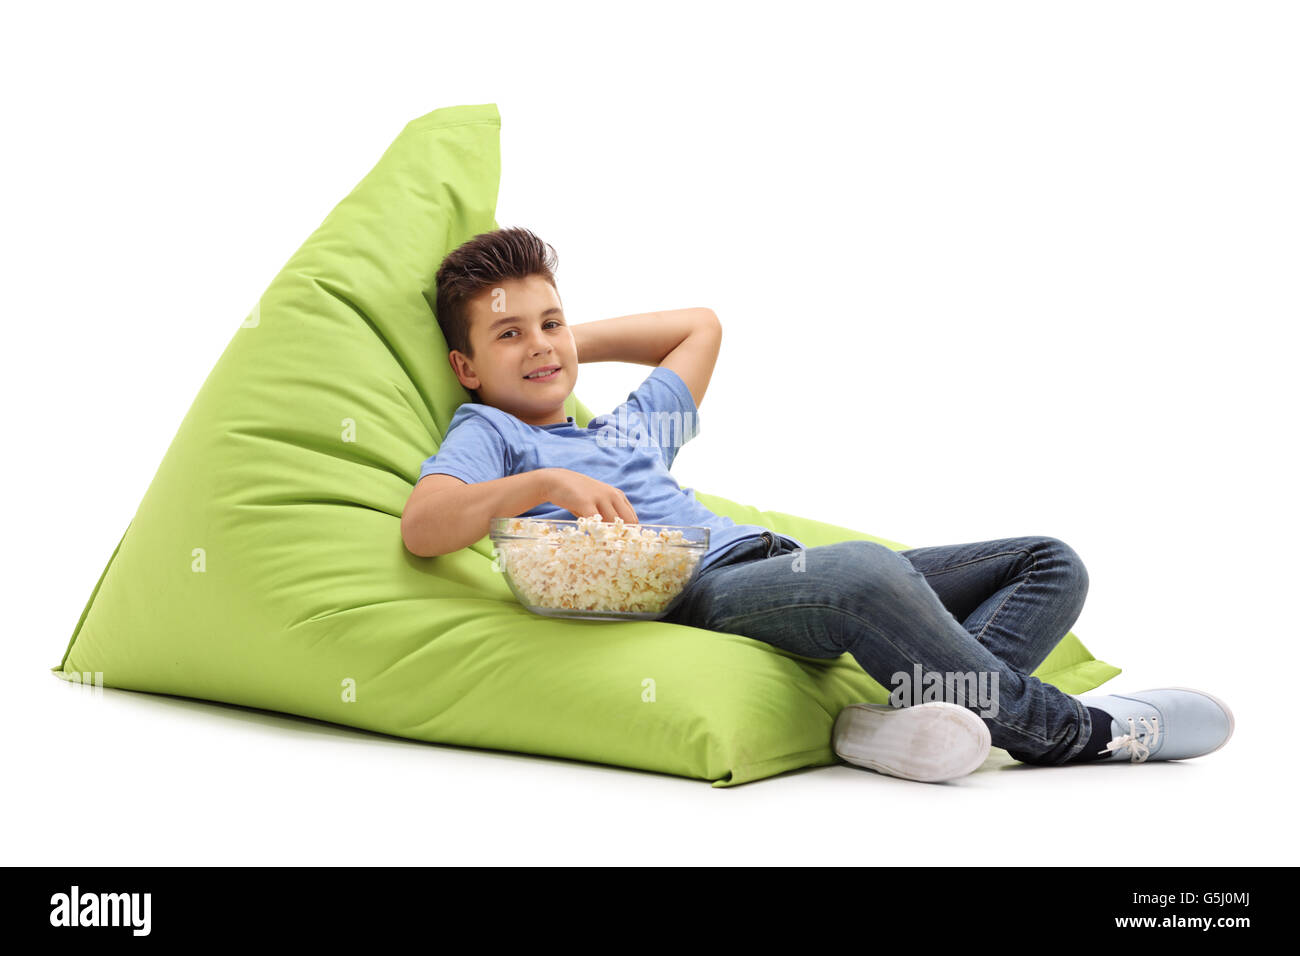 Gioioso bambino seduto su una comoda beanbag verde e mangiare popcorn isolati su sfondo bianco Foto Stock